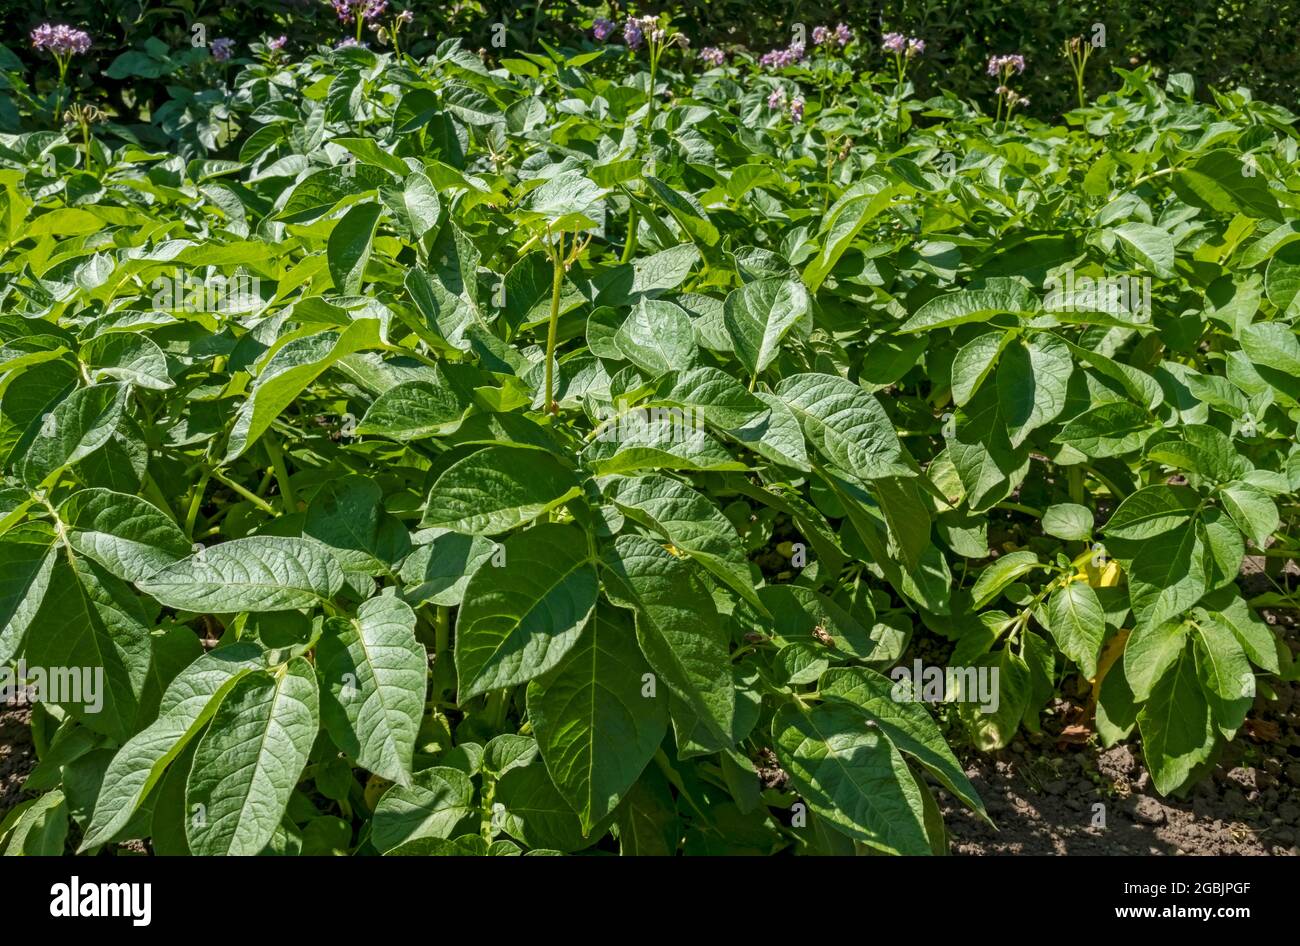 Plants de pommes de terre plants de légumes poussant dans le jardin en été Angleterre Royaume-Uni Grande-Bretagne Banque D'Images